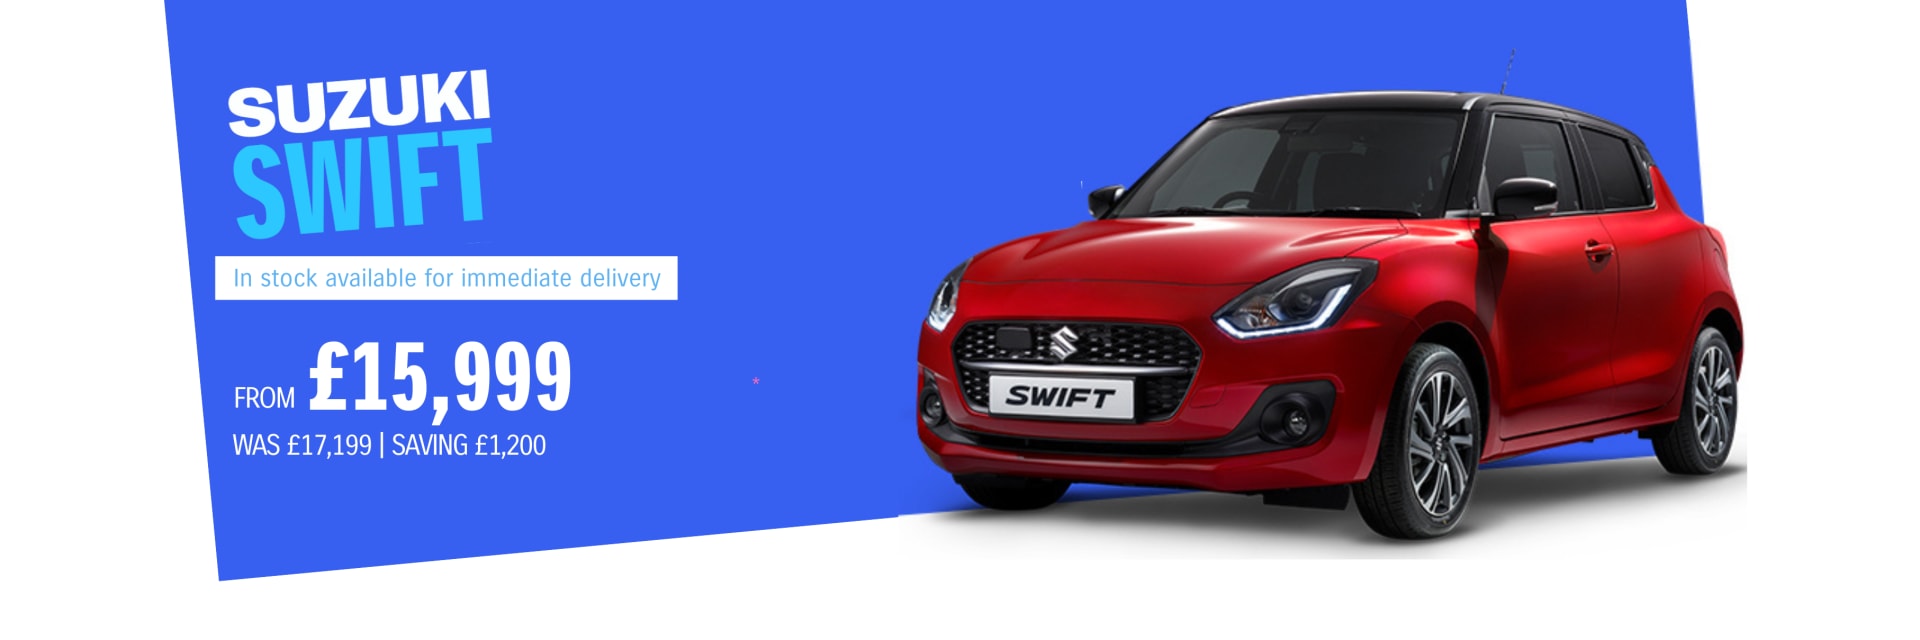 Suzuki Swift New Car Offer